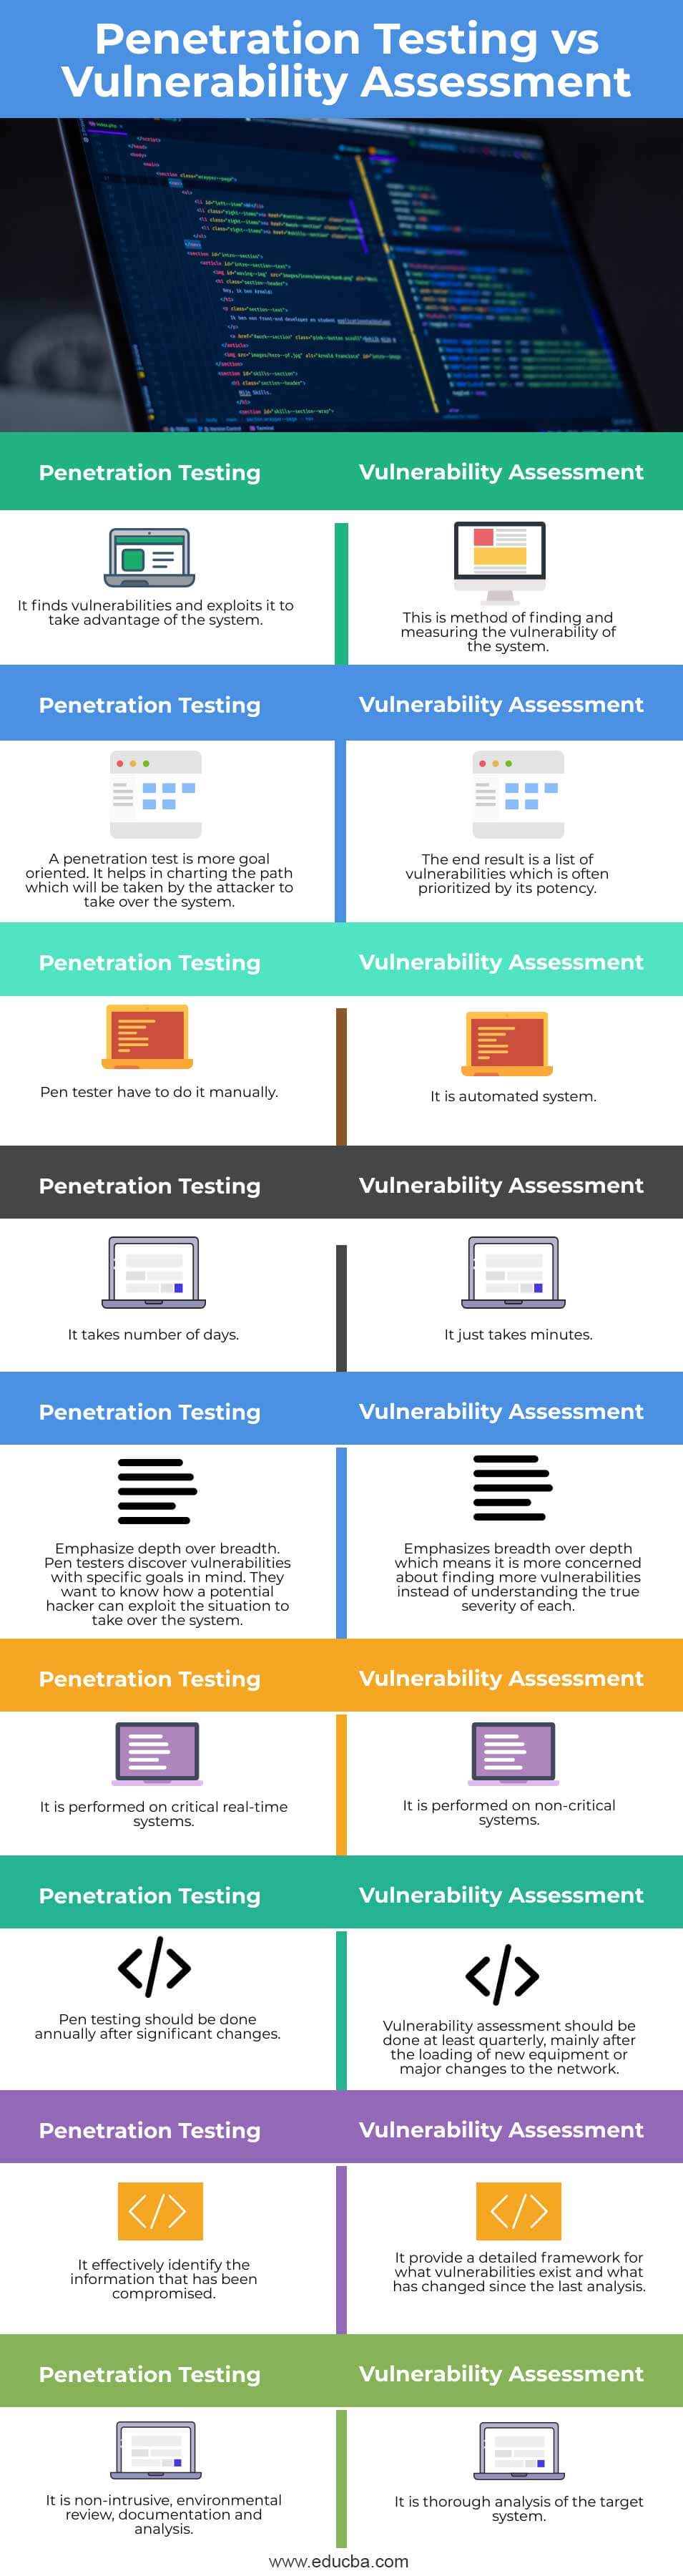 Penetration-Testing-vs-Vulnerability-Assessment-info